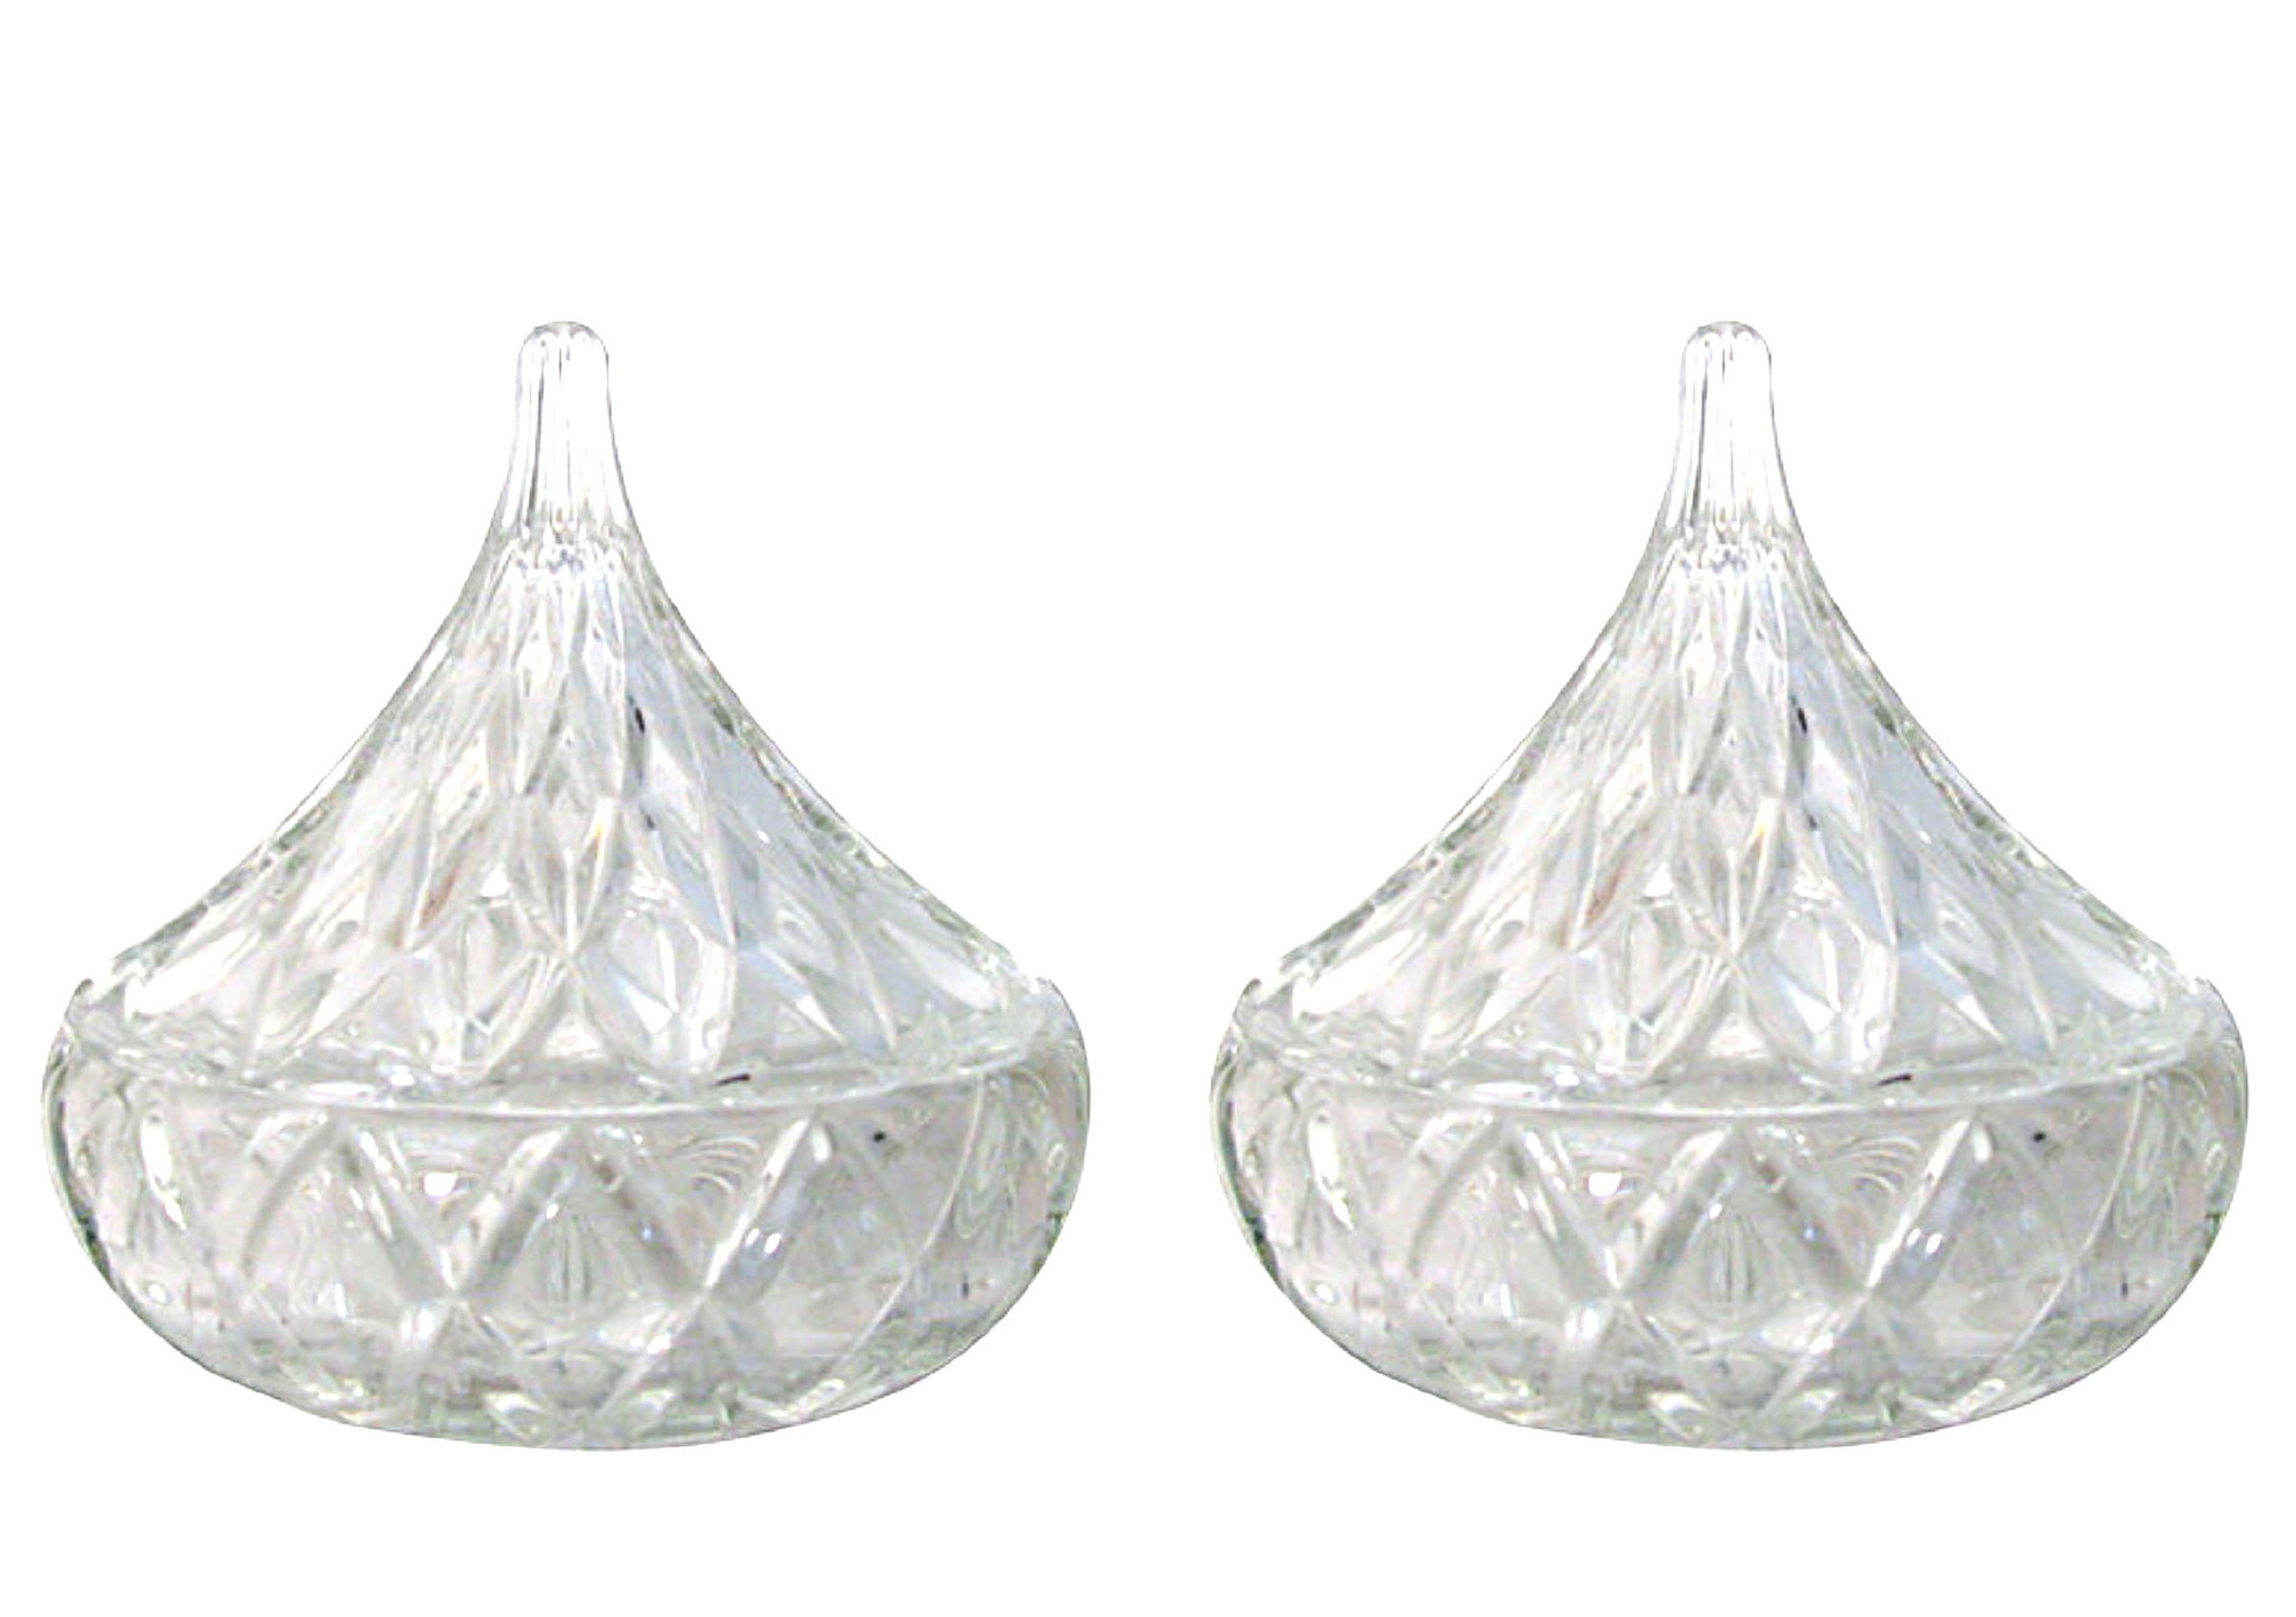 Crystal Teardrop Lidded Bowls, Pair~P77600850